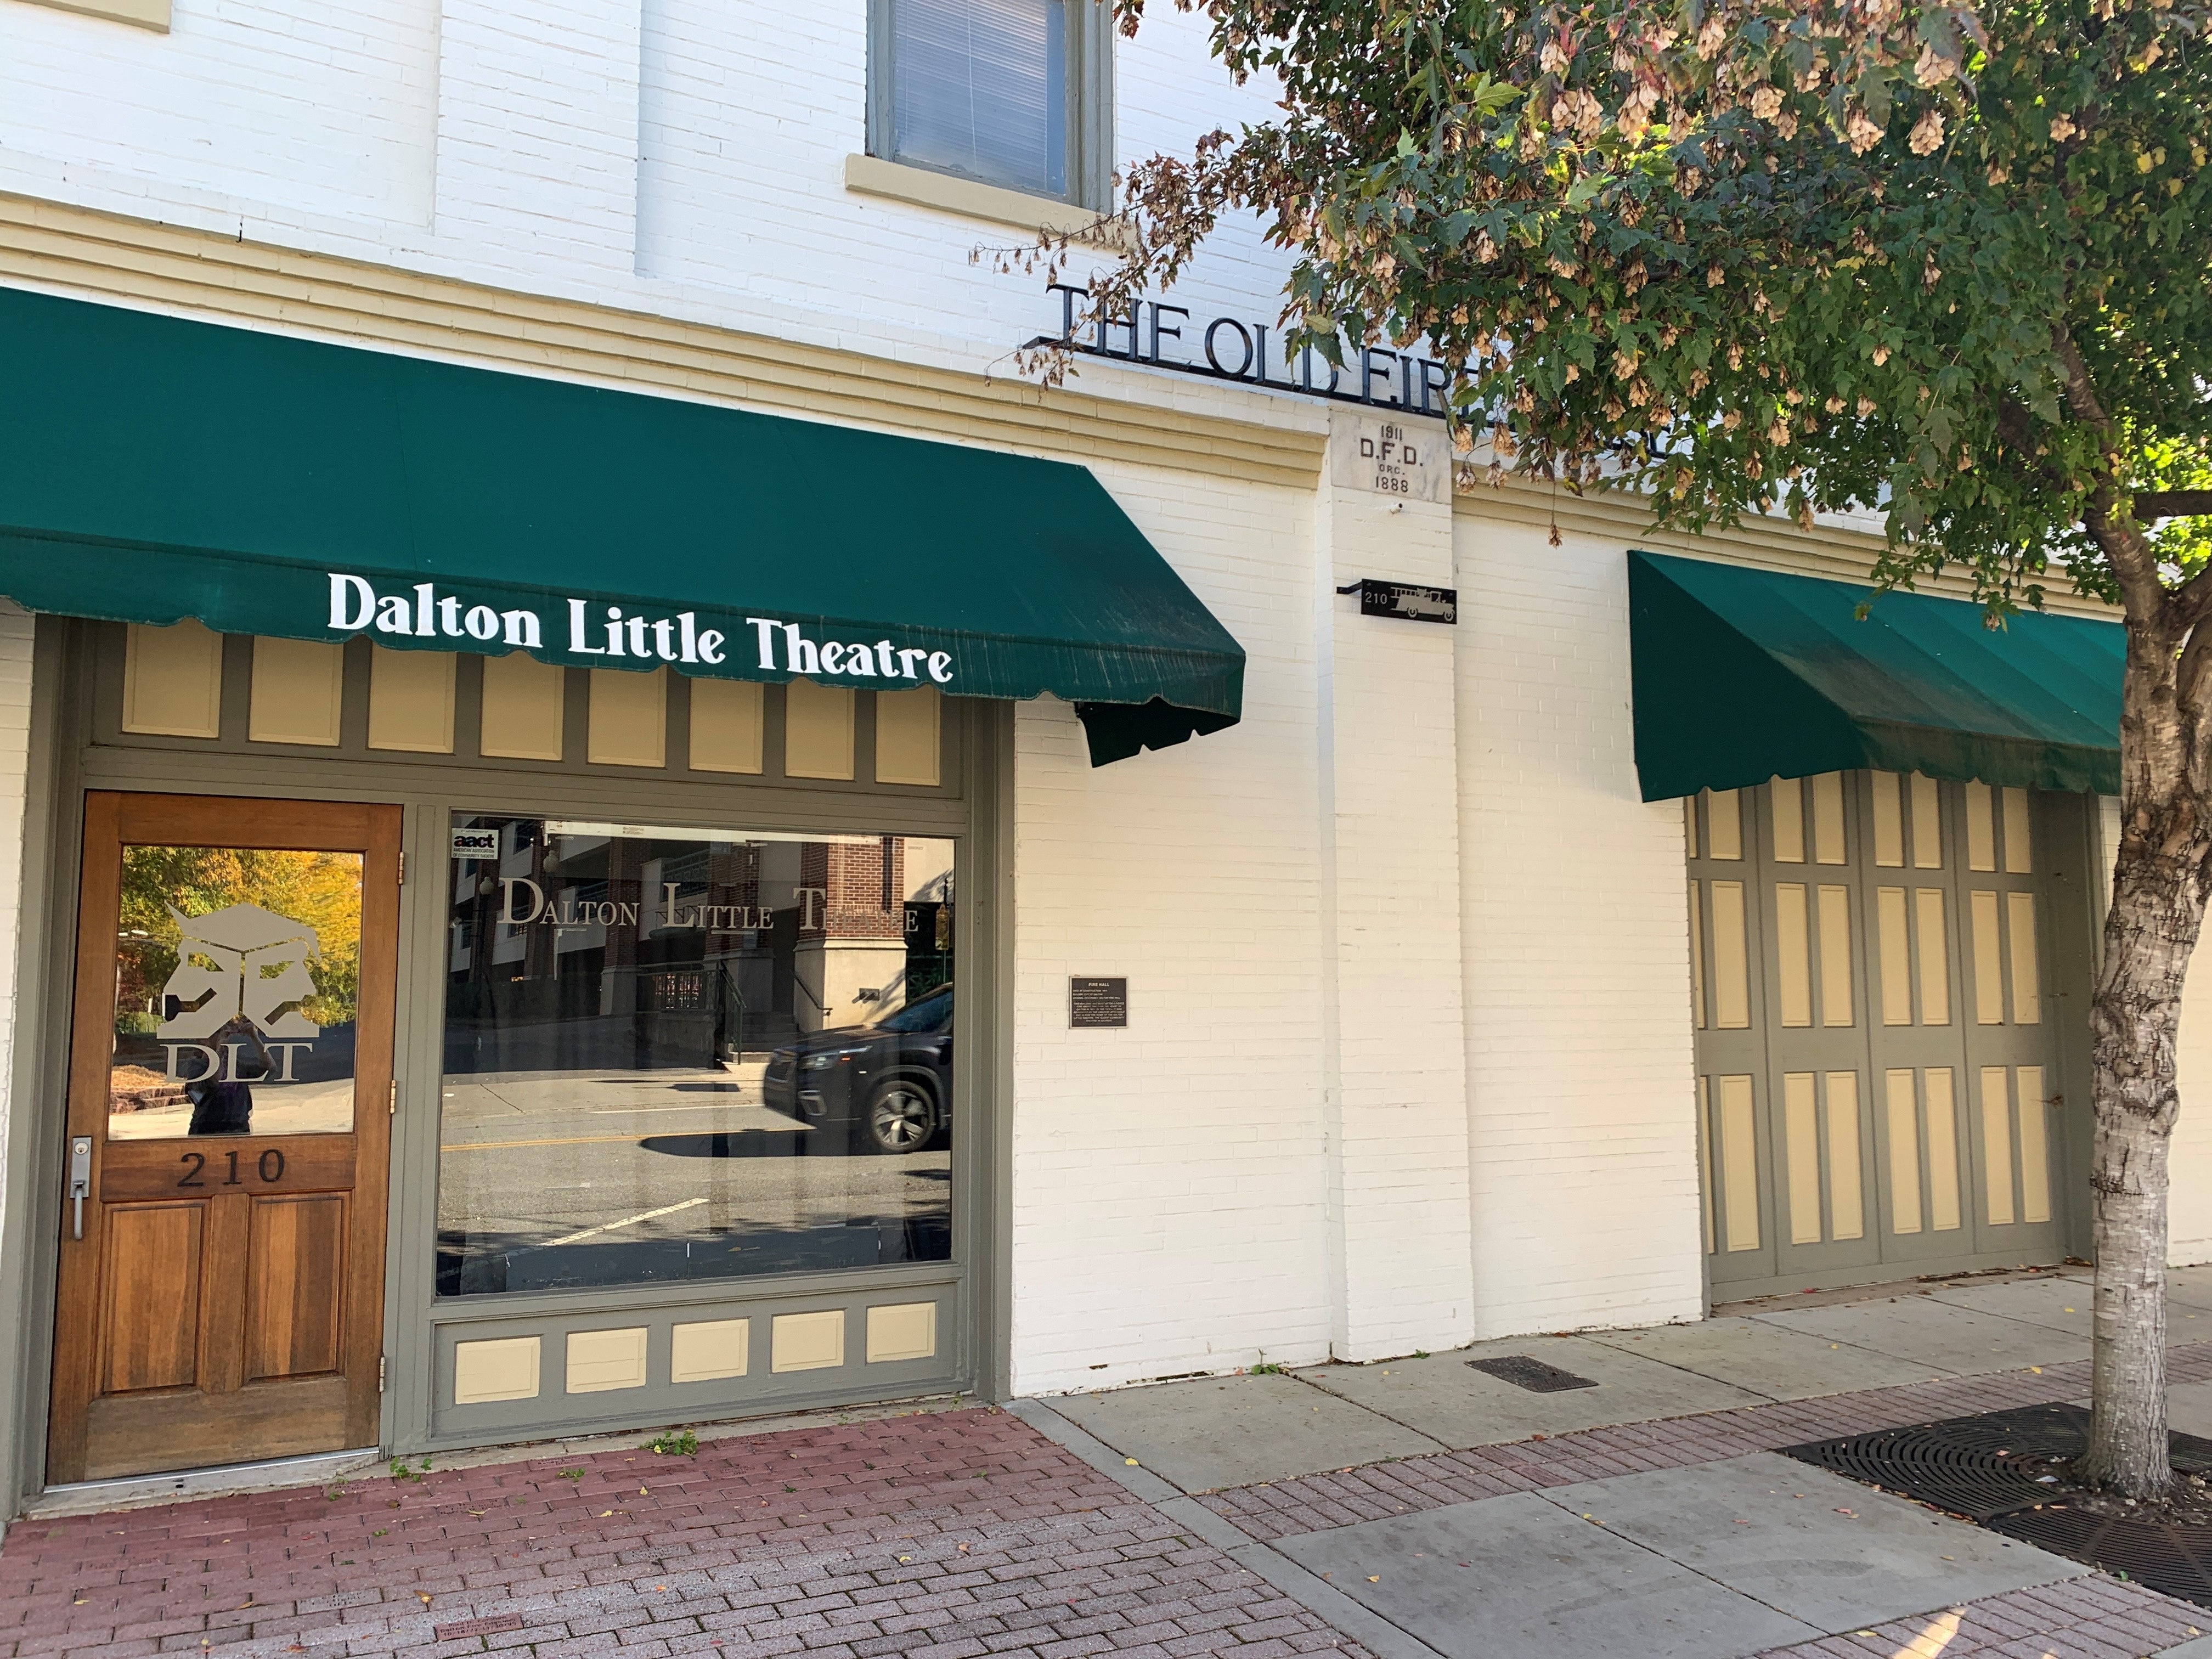 Dalton Little Theatre